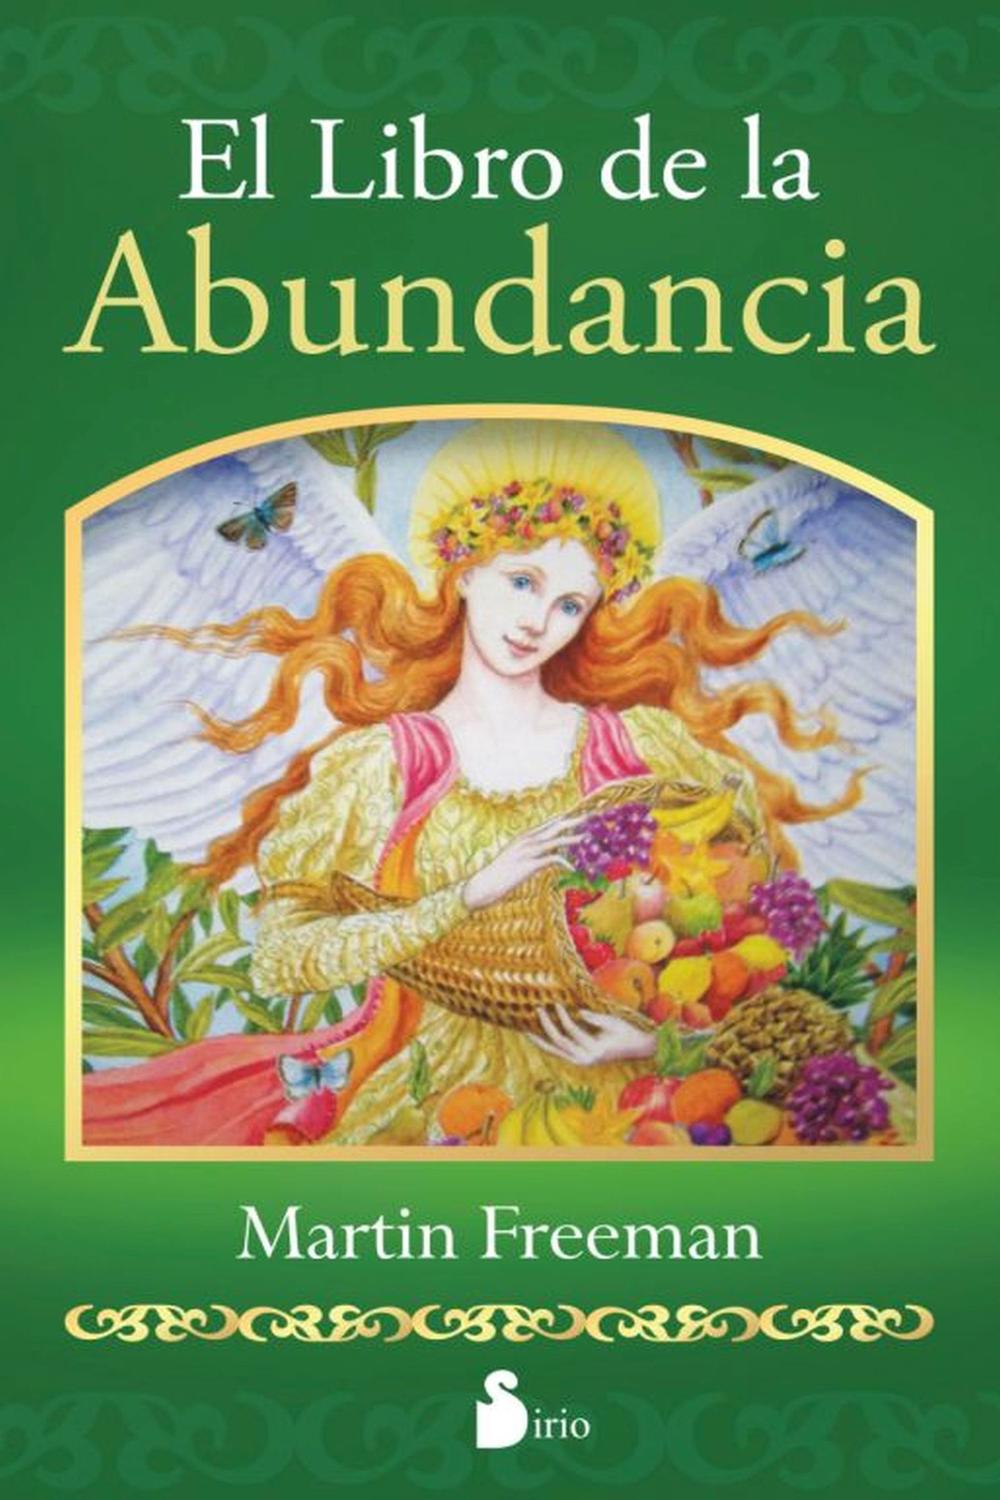 El libro de la abundancia - Martin Freeman, Editorial sirio